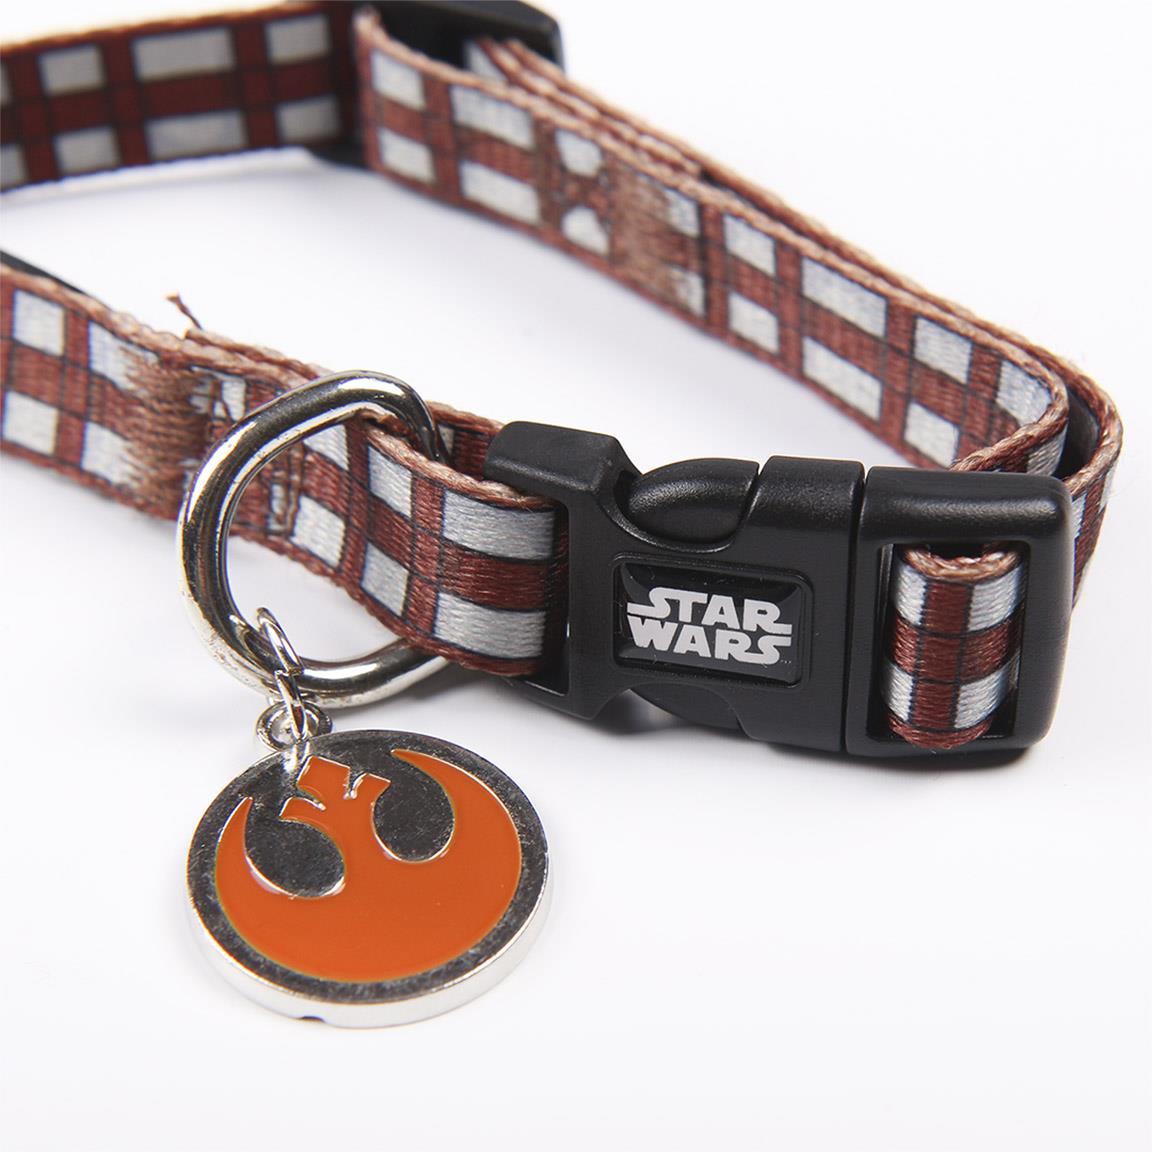 Collare per cani Star Wars Chewbacca Taglia XS-S